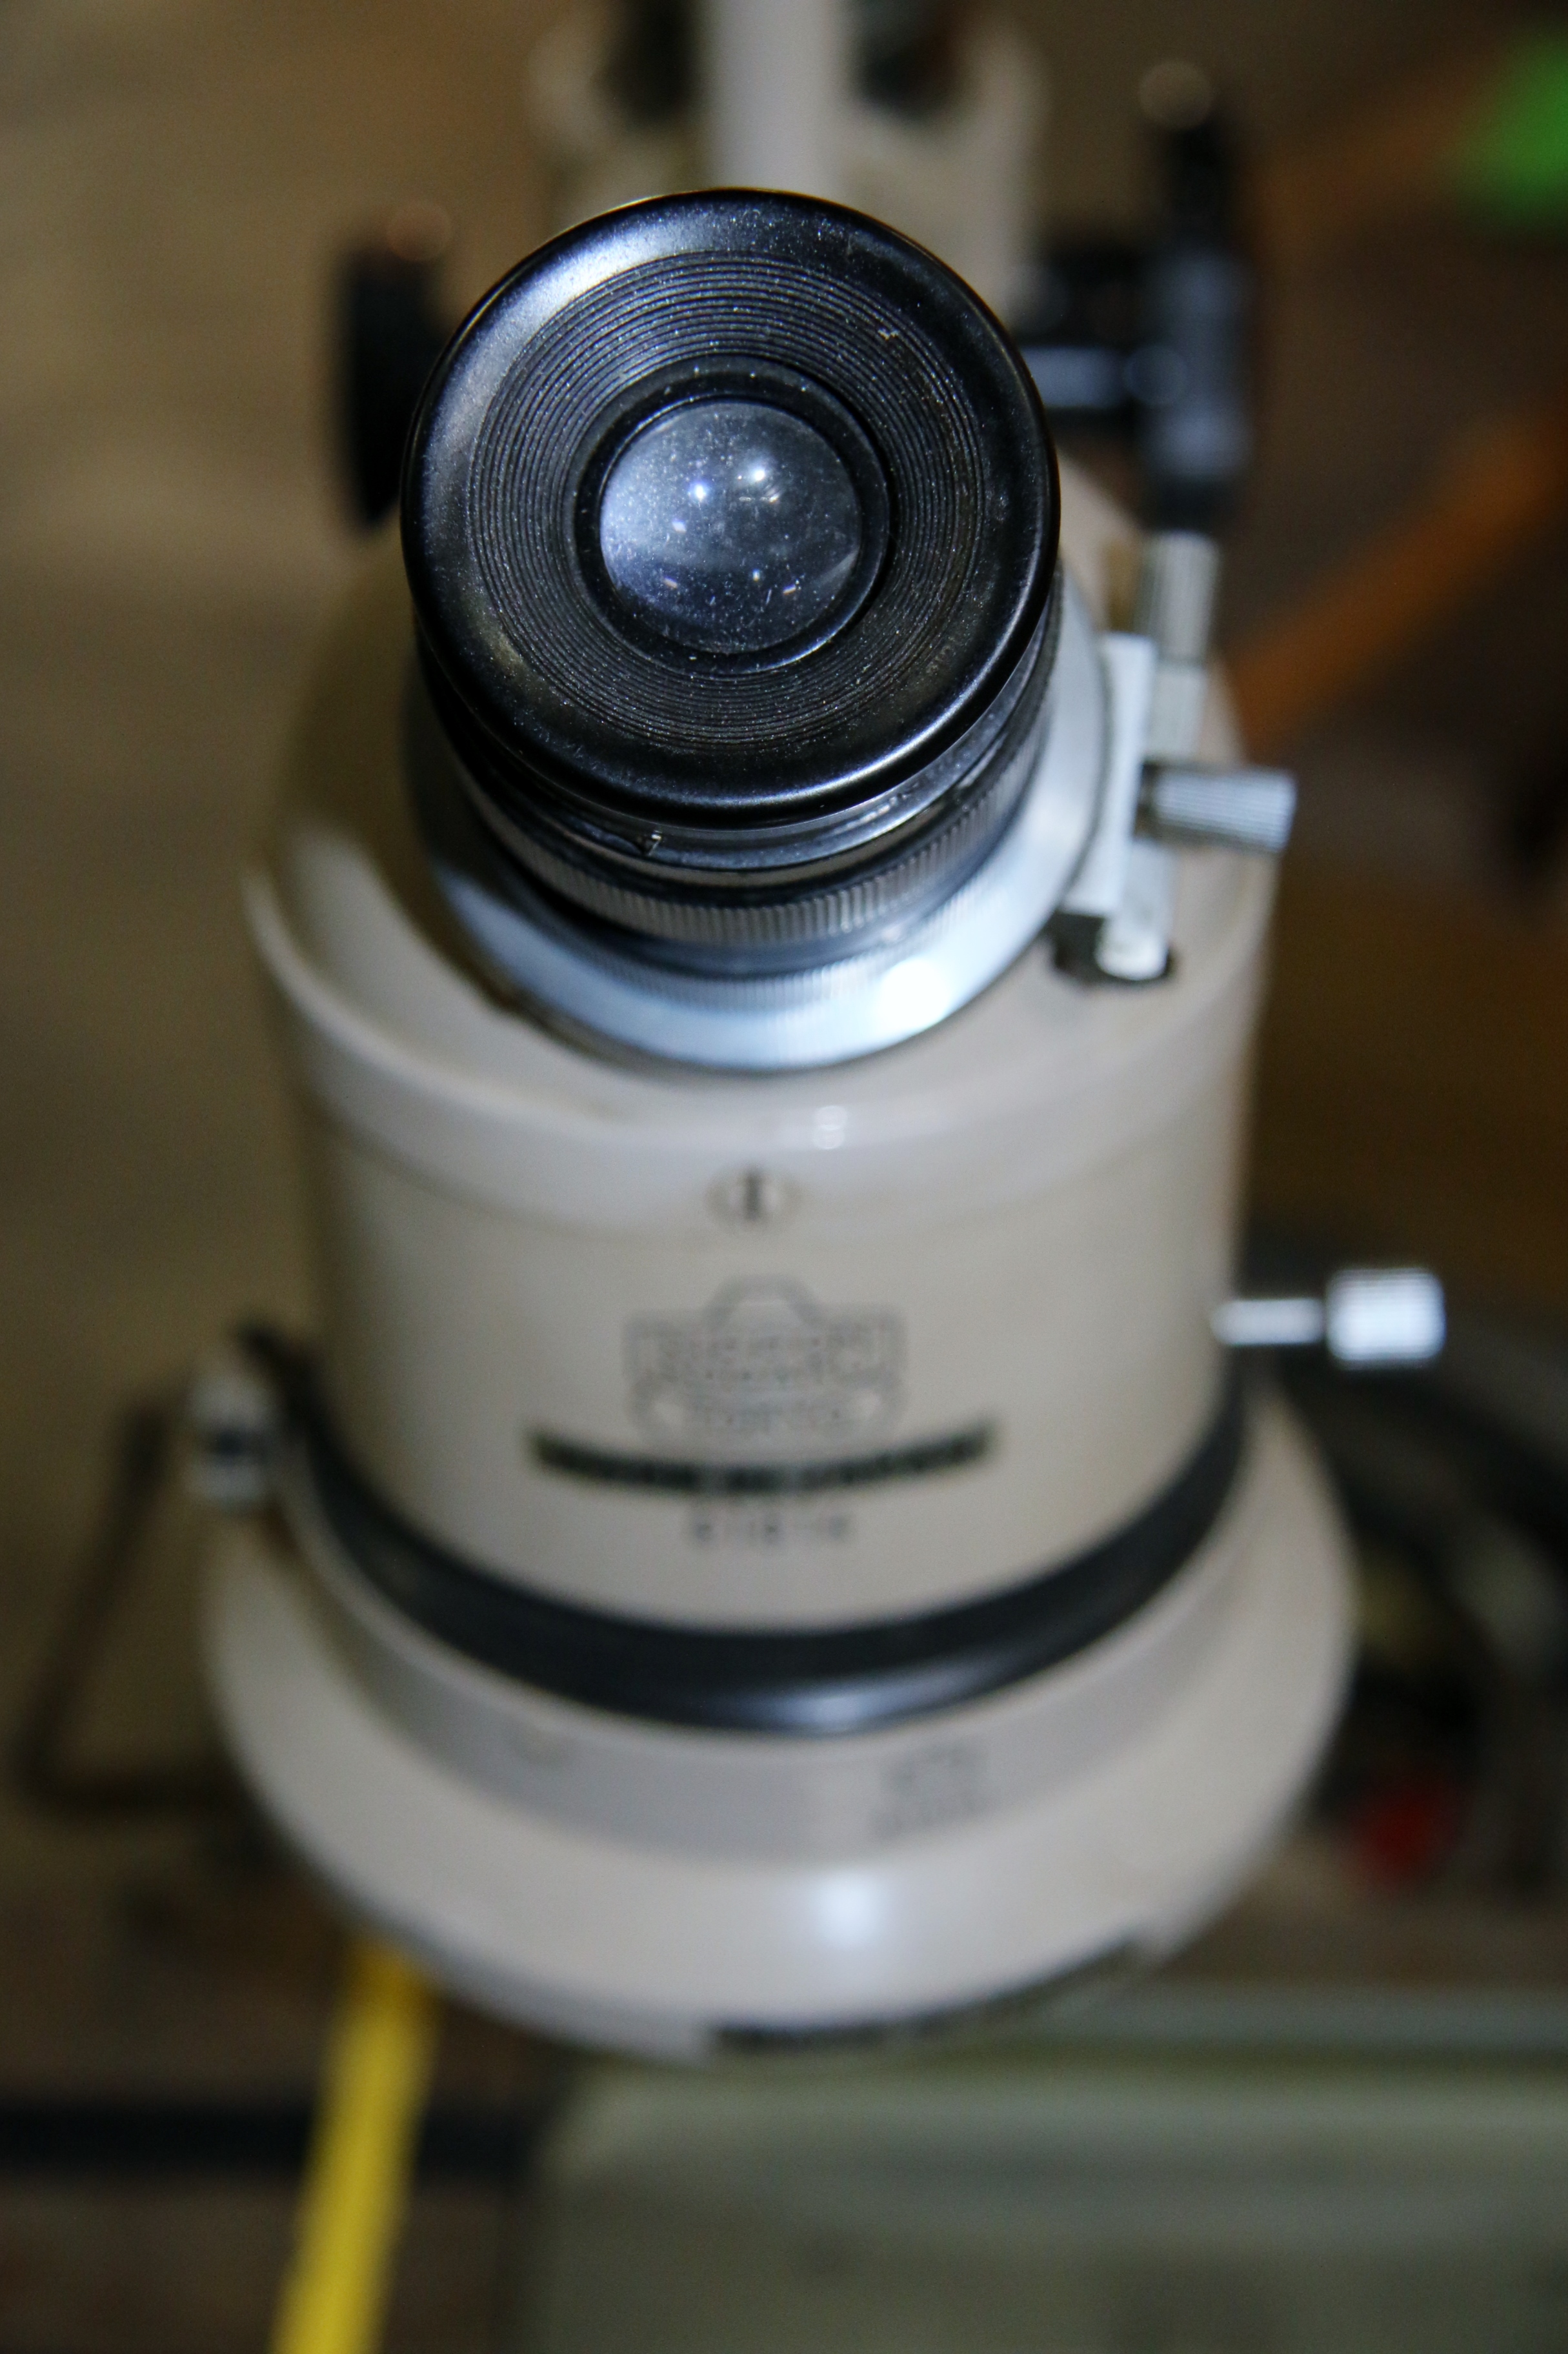 (1) Used Nikon Measurescope Model 9586 with Microcode II Boeckeler Instruments